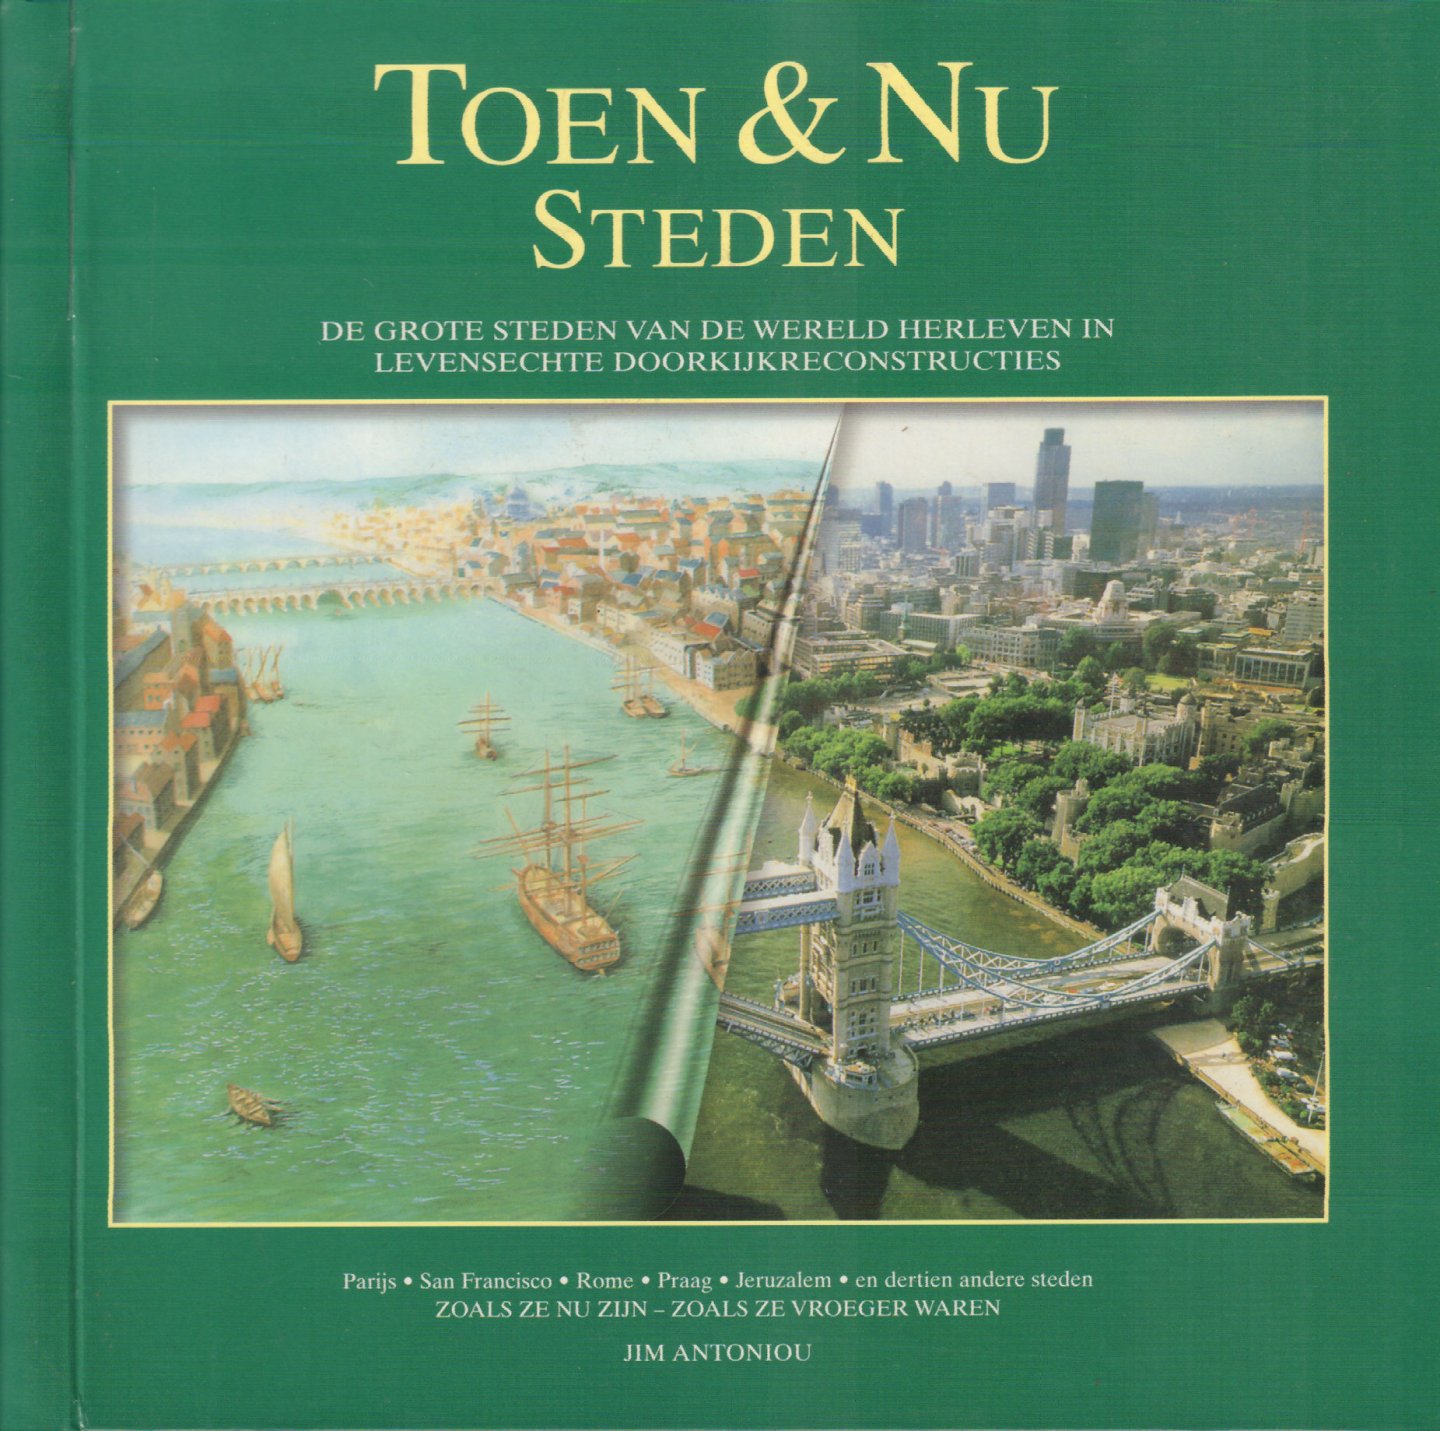 Antoniou, Jim - Toen & Nu Steden (De grote steden van de wereld herleven in levensechte doorkijkconstructies), 143 pag. ringband, gave staat